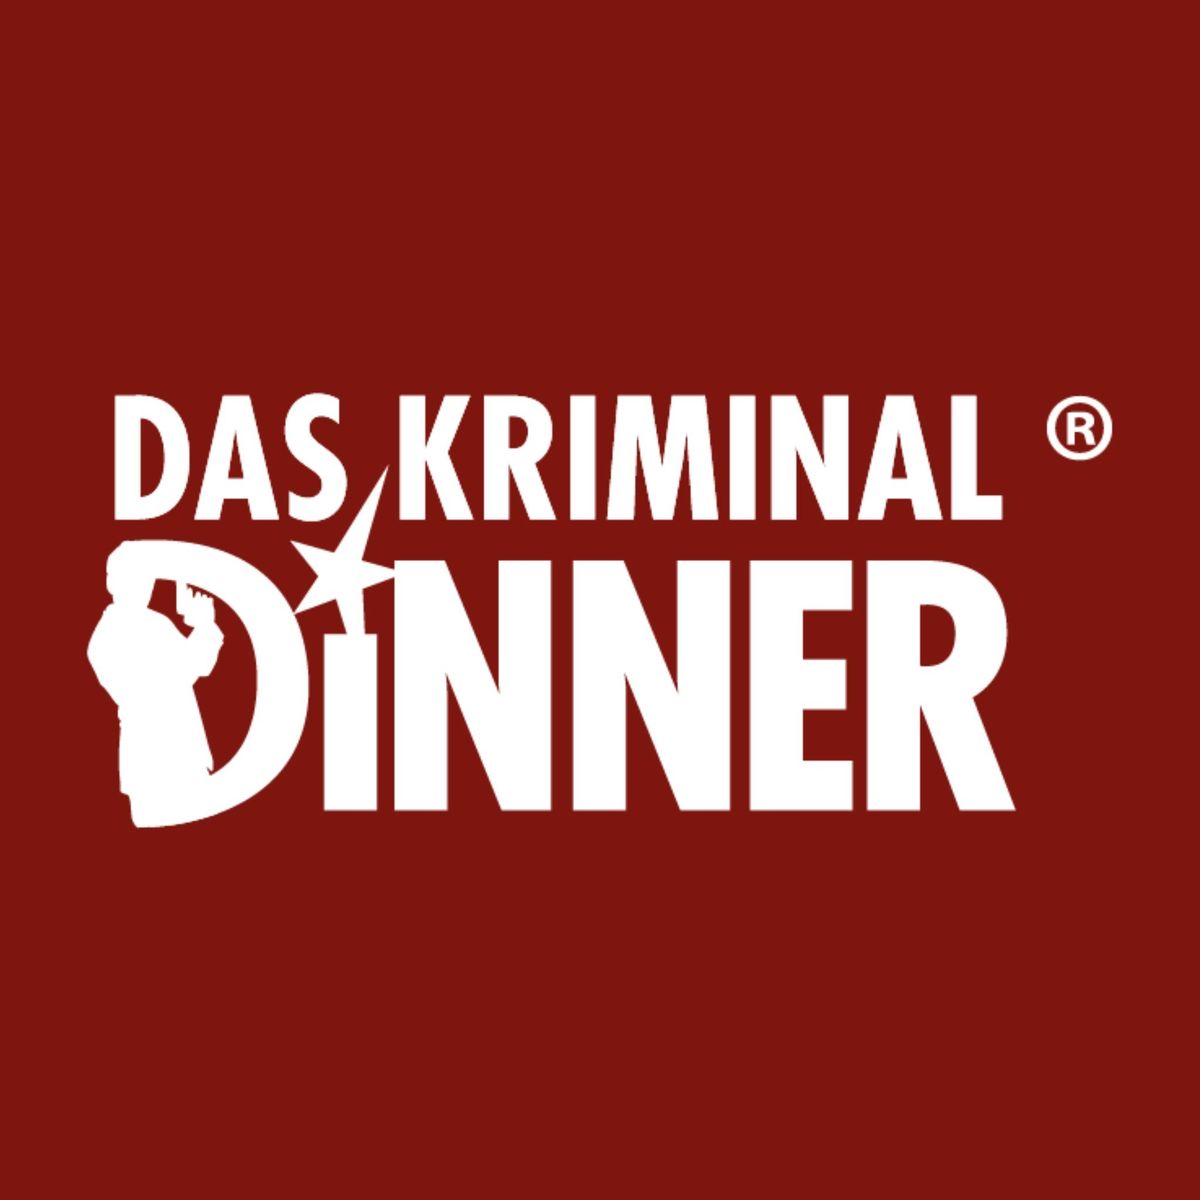 Das Kriminal Dinner in Augsburg